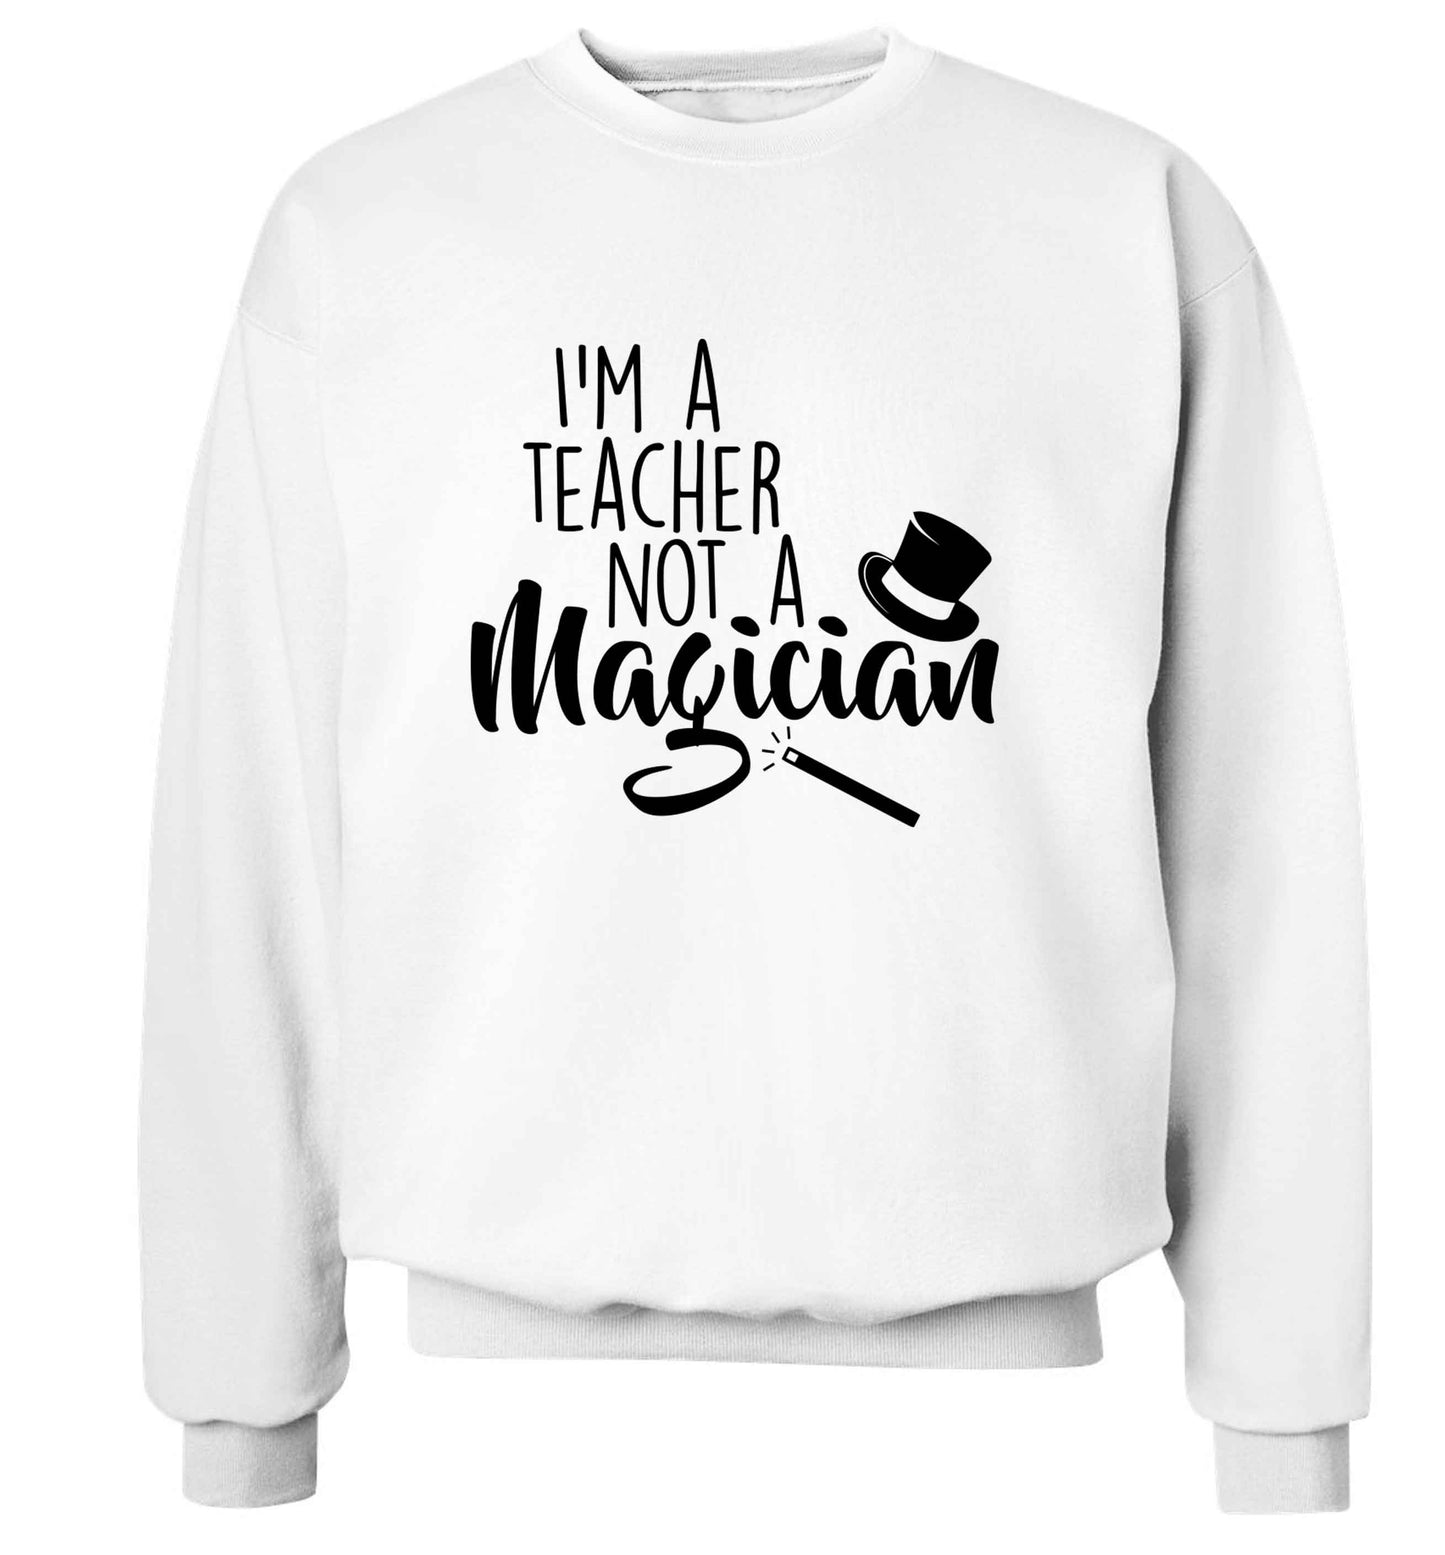 I'm a teacher not a magician adult's unisex white sweater 2XL